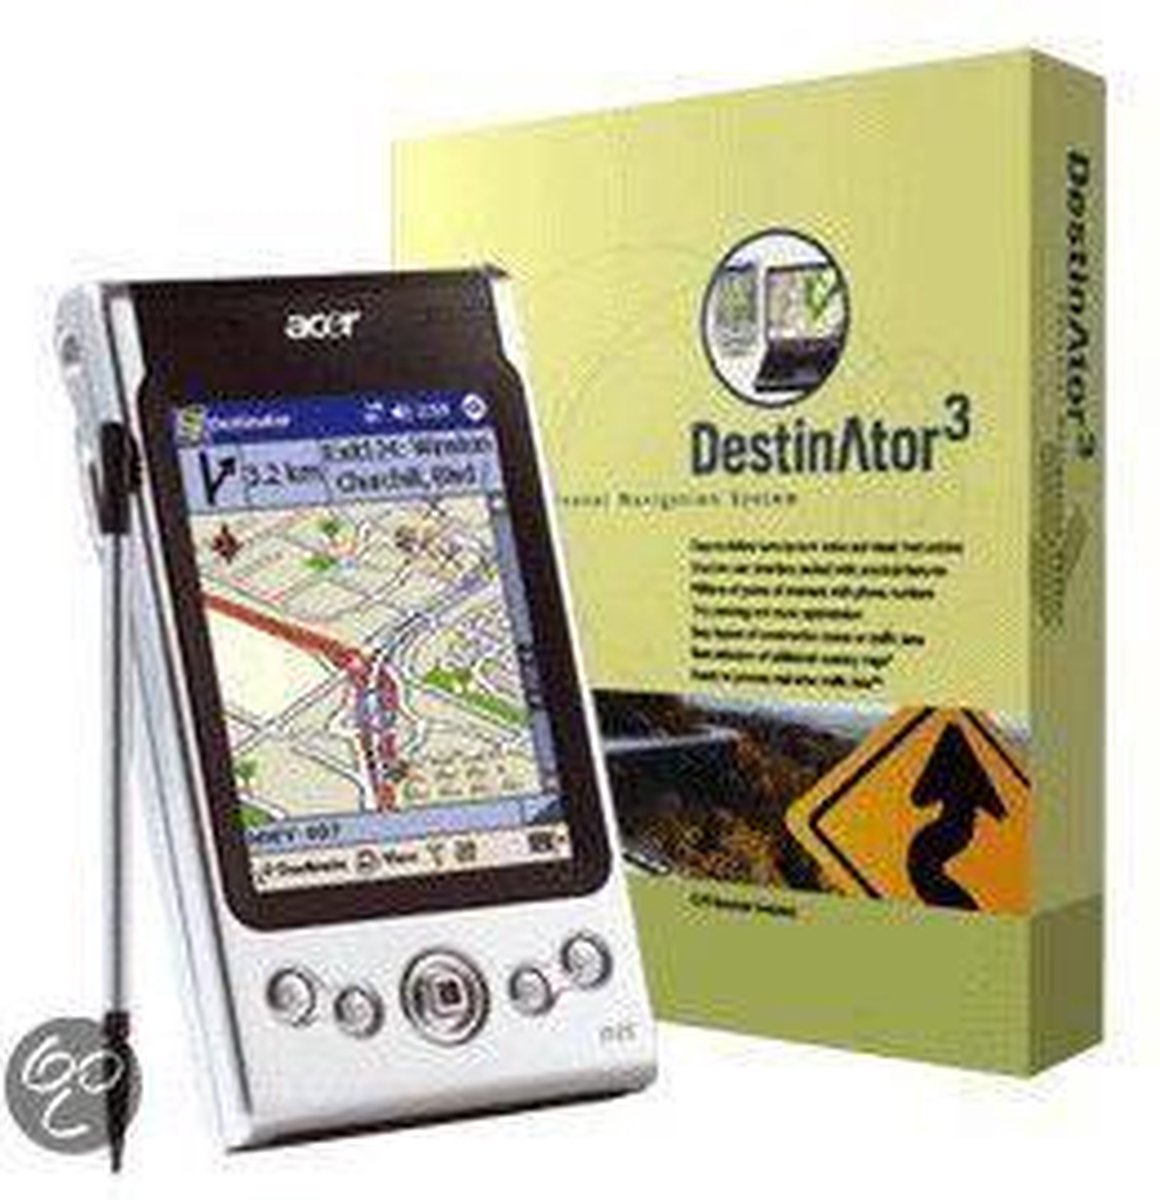 Acer N35 GPS navigatie + Destinator 3 Benelux | bol